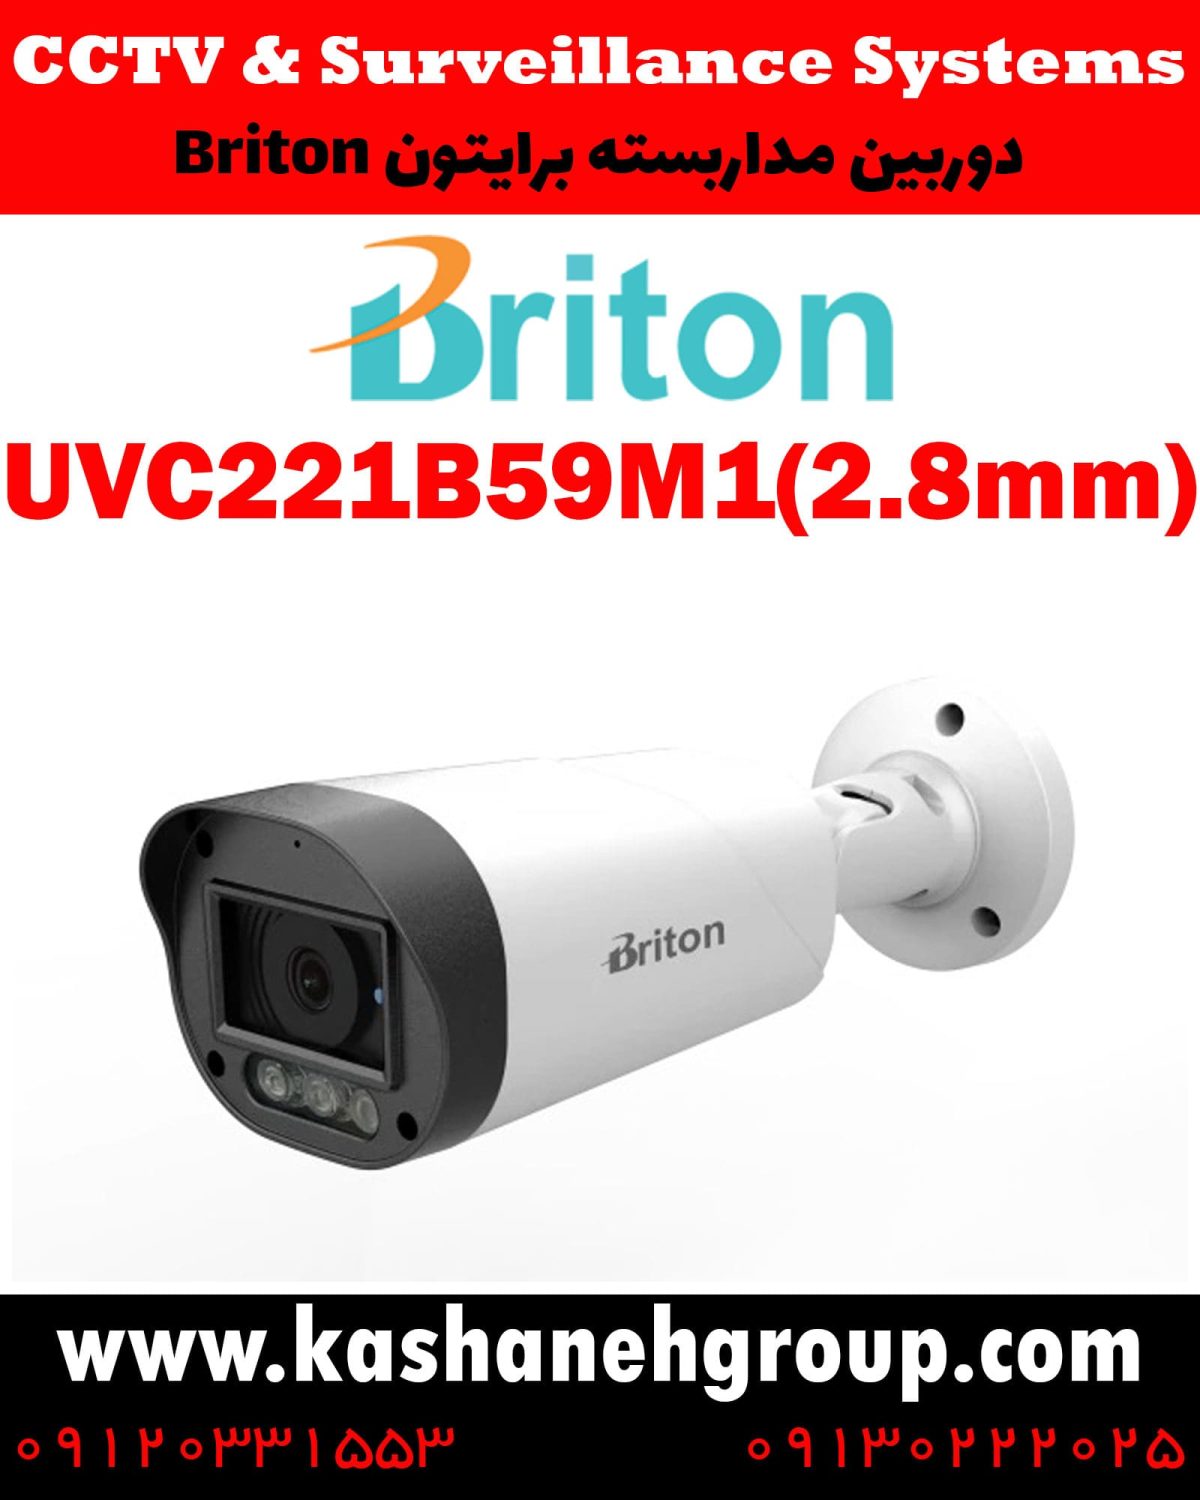 دوربین مداربسته UVC221B59M1(2.8MM)، دوربین مداربسته برایتون UVC221B59M1(2.8MM)، دوربین مداربسته Briton UVC221B59M1(2.8MM)، دوربین برایتون UVC221B59M1(2.8MM)، قیمت دوربین برایتون، نرم افزار برایتون، تعمیر دوربین برایتون، نمایندگی برایتون، نماینده برایتون، قیمت دوربین برایتون، مشخصات دوربین UVC221B59M1(2.8MM)، قیمت دوربین برایتون UVC221B59M1(2.8MM)، قیمت دوربین UVC221B59M1(2.8MM) برایتون، پک دوربین برایتون، پک دوربین مداربسته برایتون، دوربین Briton، دوربین مداربسته برایتون Briton UVC221B59M1(2.8MM) ، نماینده دوربین Briton، نمایندگی دوربین Briton، نرم افزار موبایل دوربین مداربسته Briton